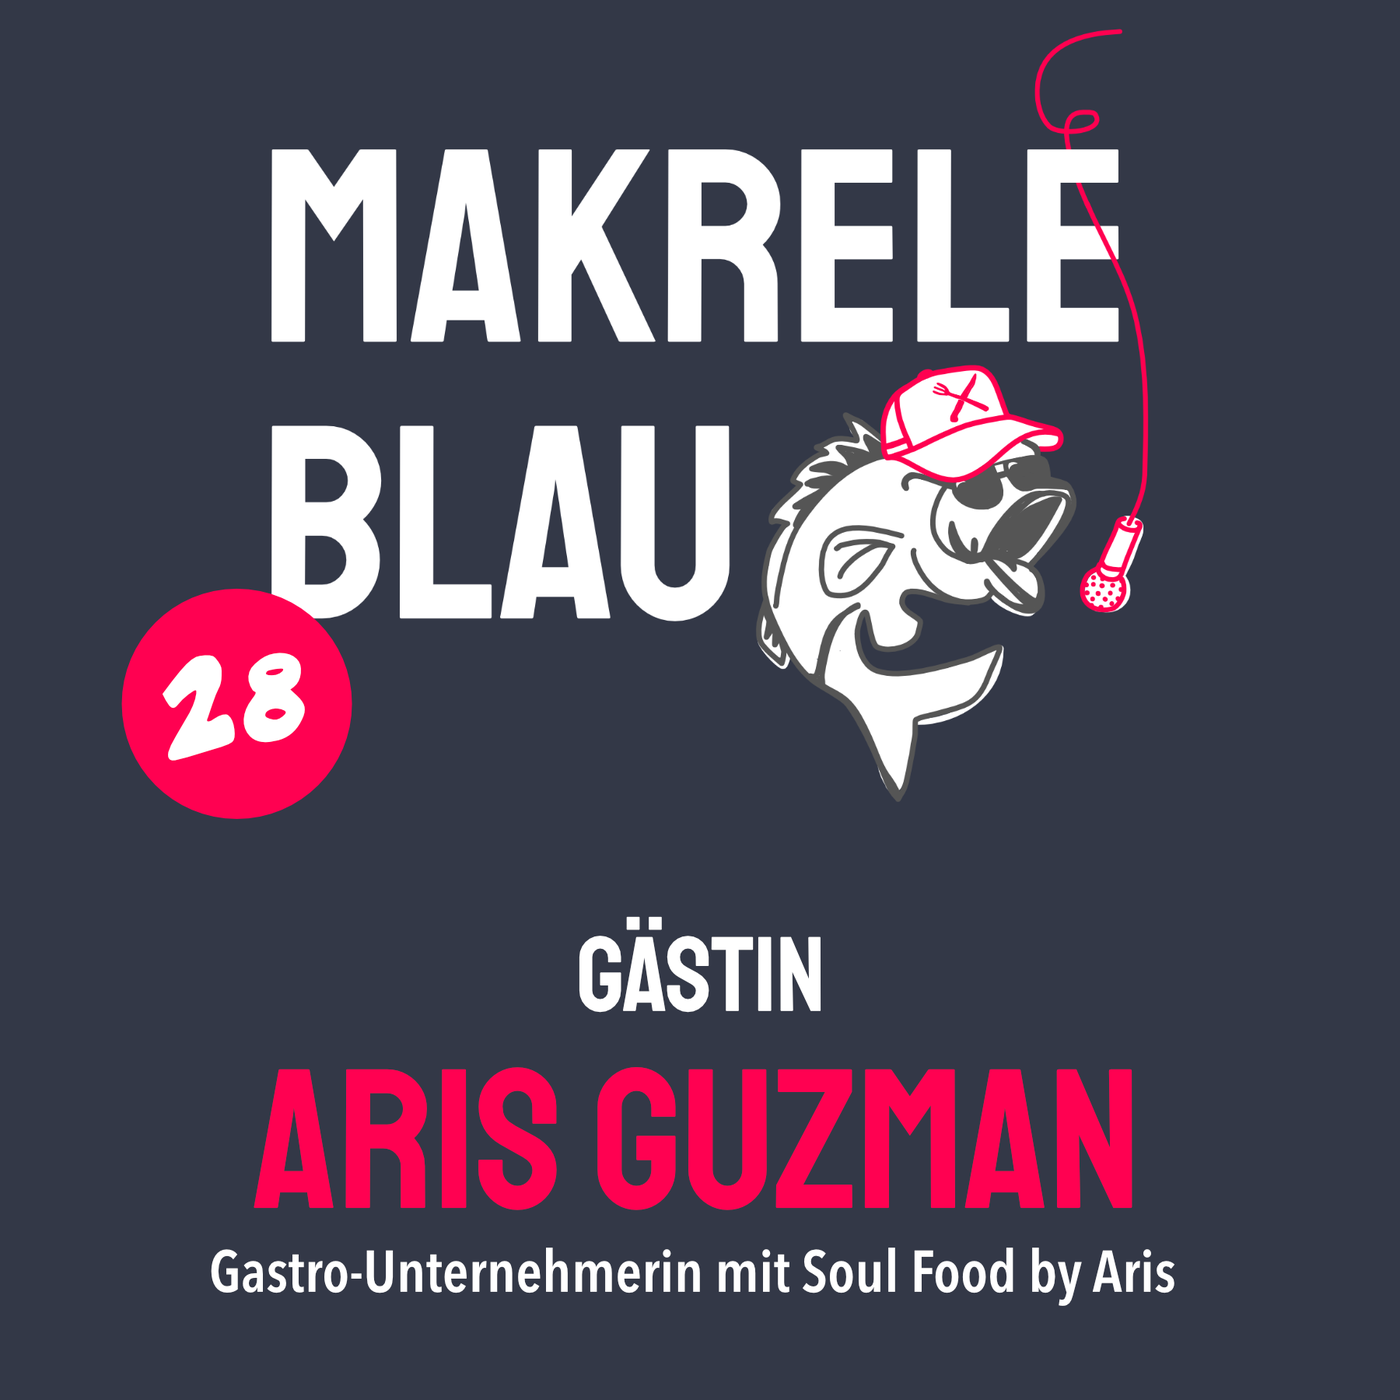 Makrele Blau #28 – Maniok chan alles, mit dä Aris Guzman